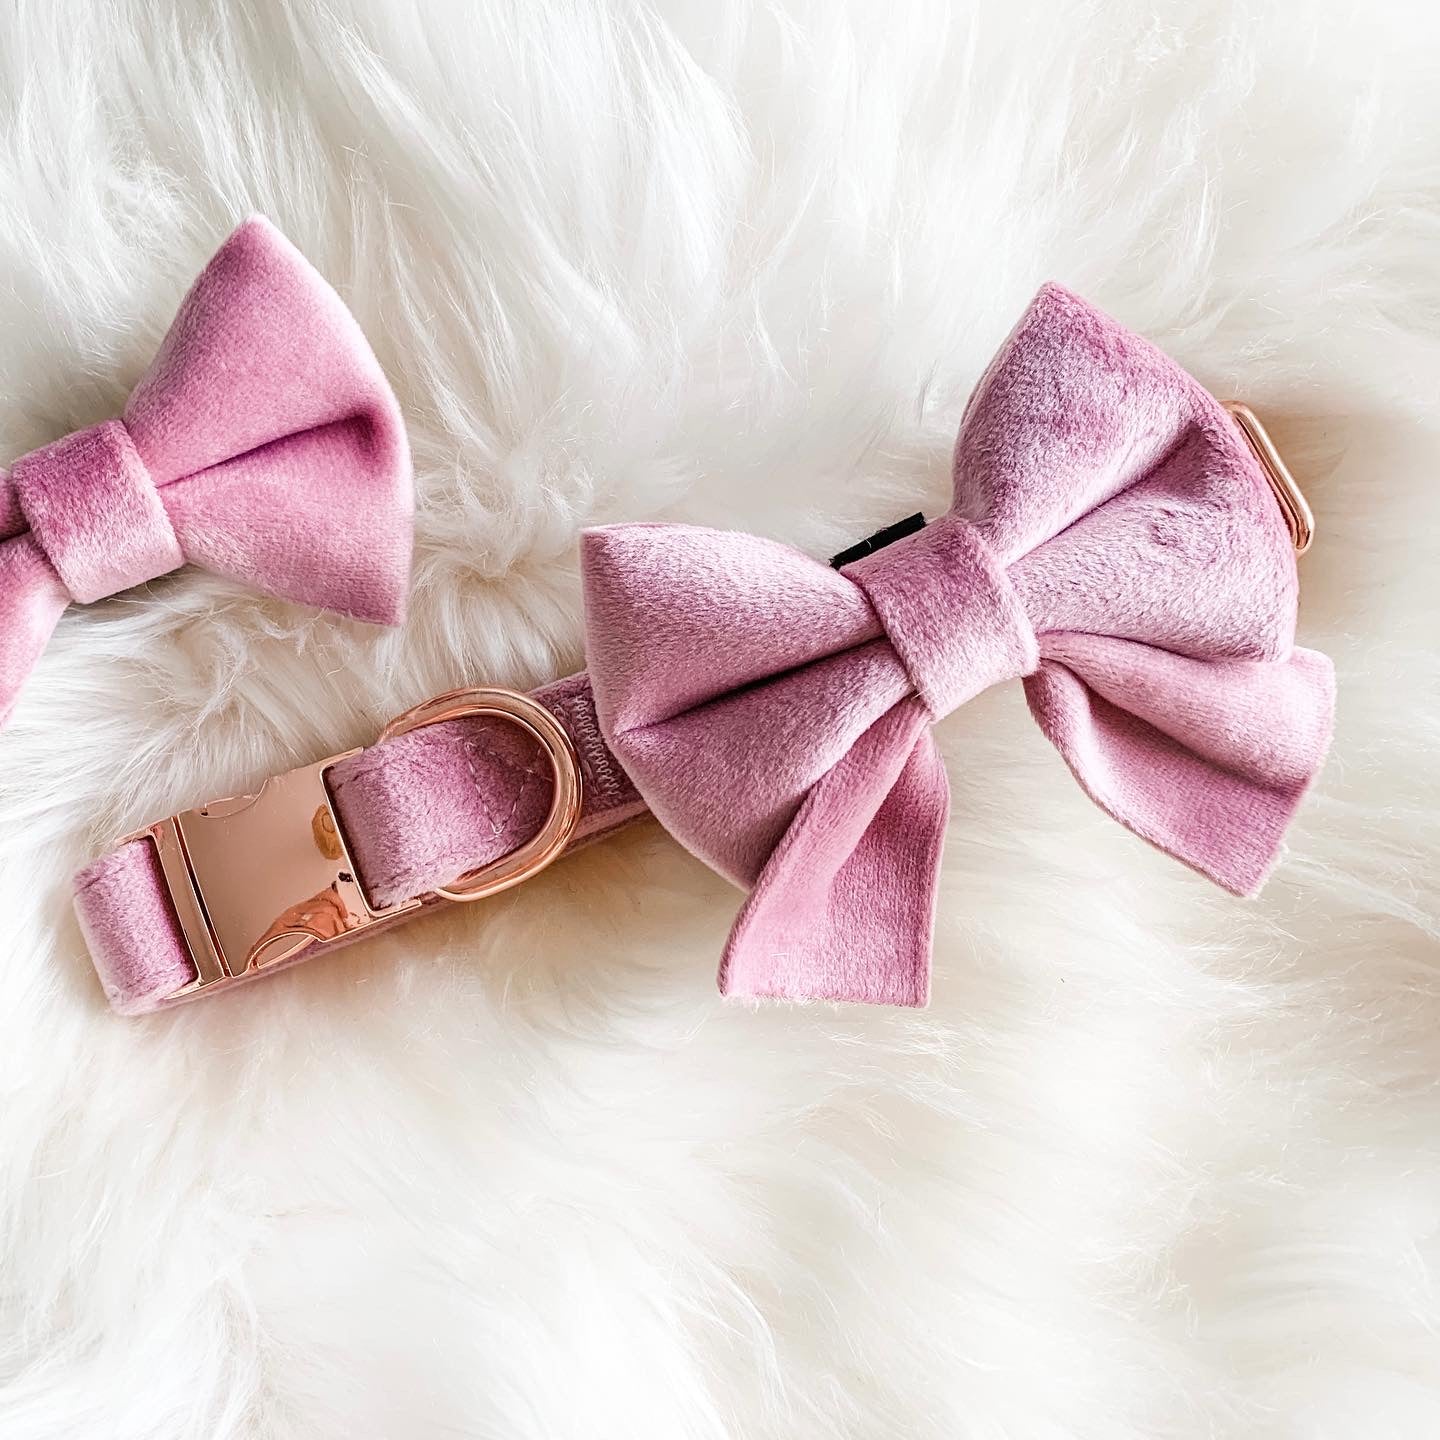 Pink Velvet Dog Collar